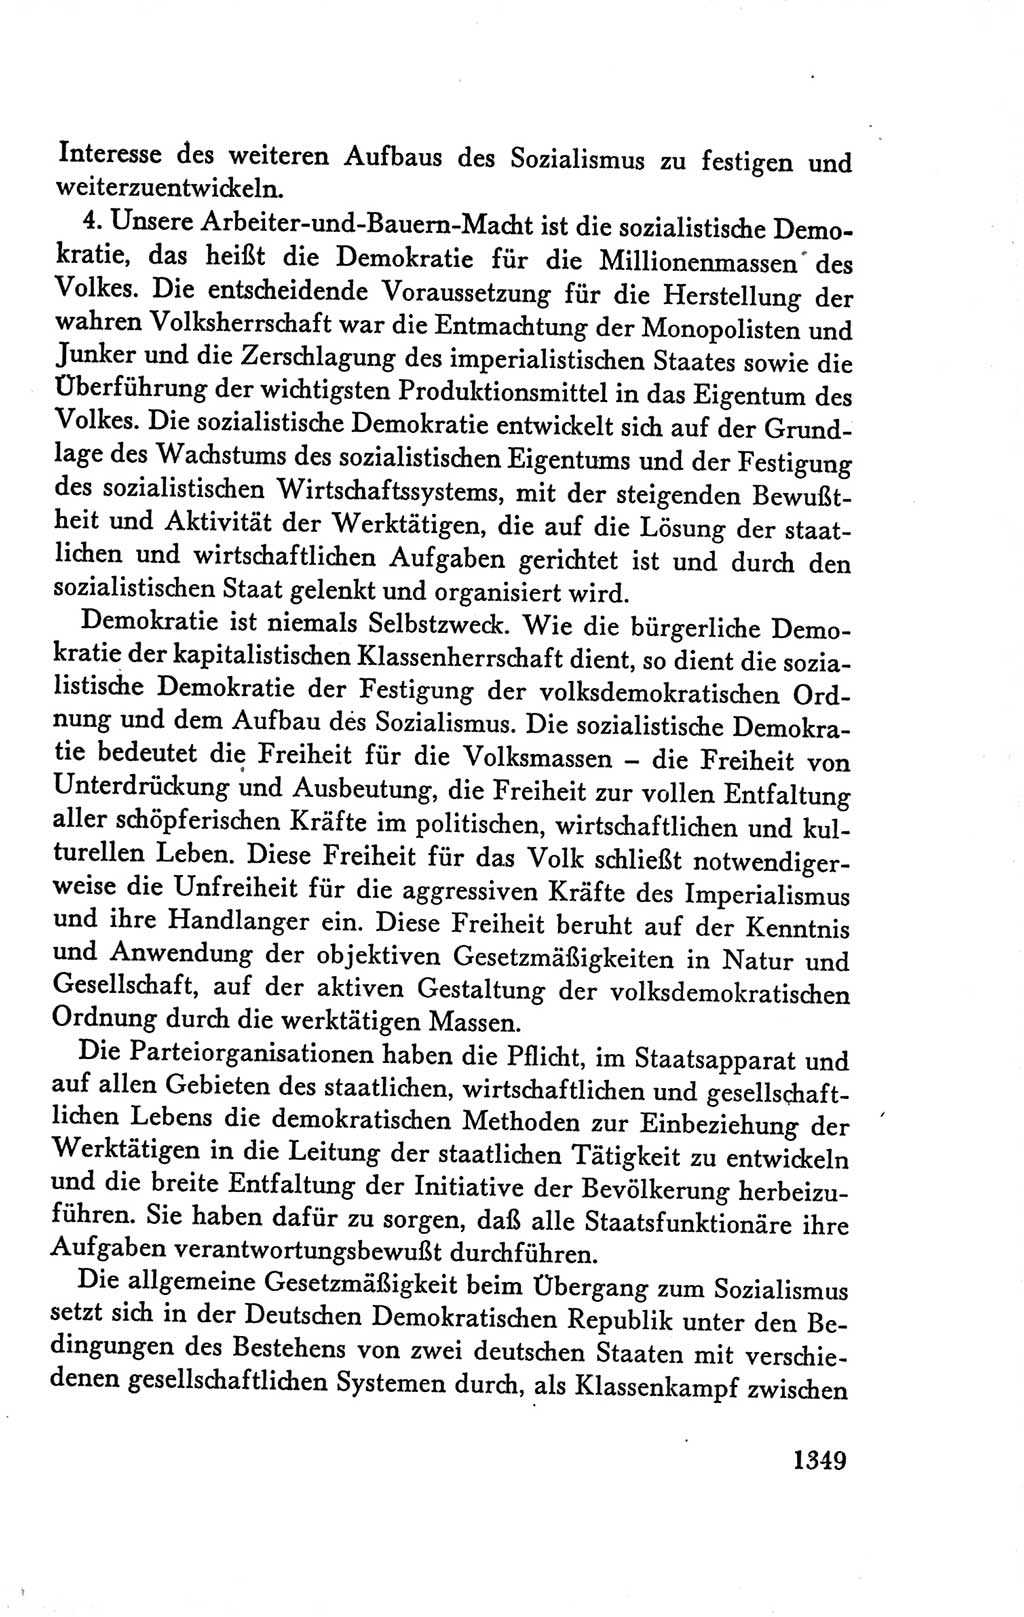 Protokoll der Verhandlungen des Ⅴ. Parteitages der Sozialistischen Einheitspartei Deutschlands (SED) [Deutsche Demokratische Republik (DDR)] 1958, Seite 1349